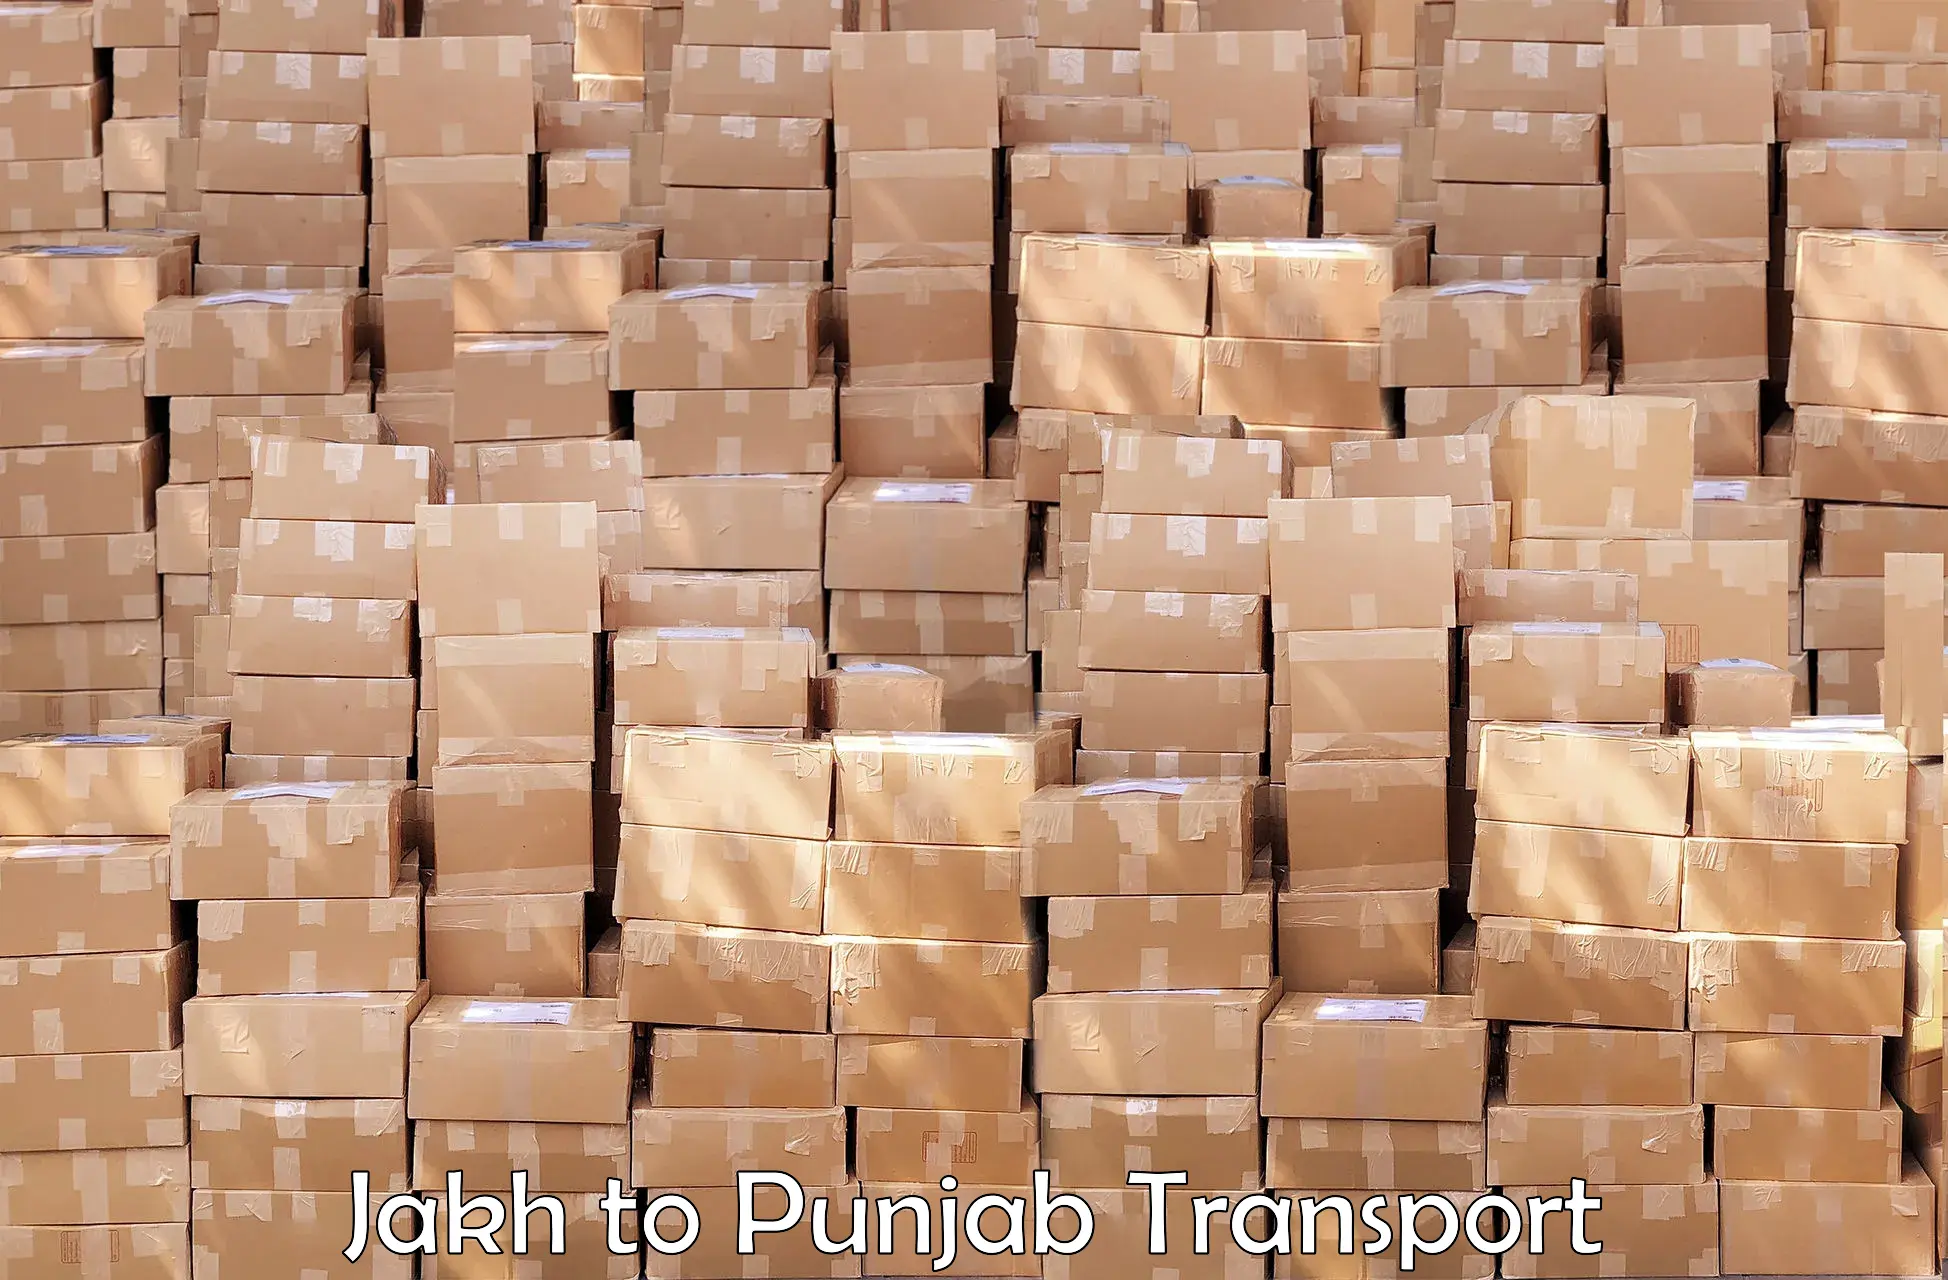 Furniture transport service Jakh to Jalandhar